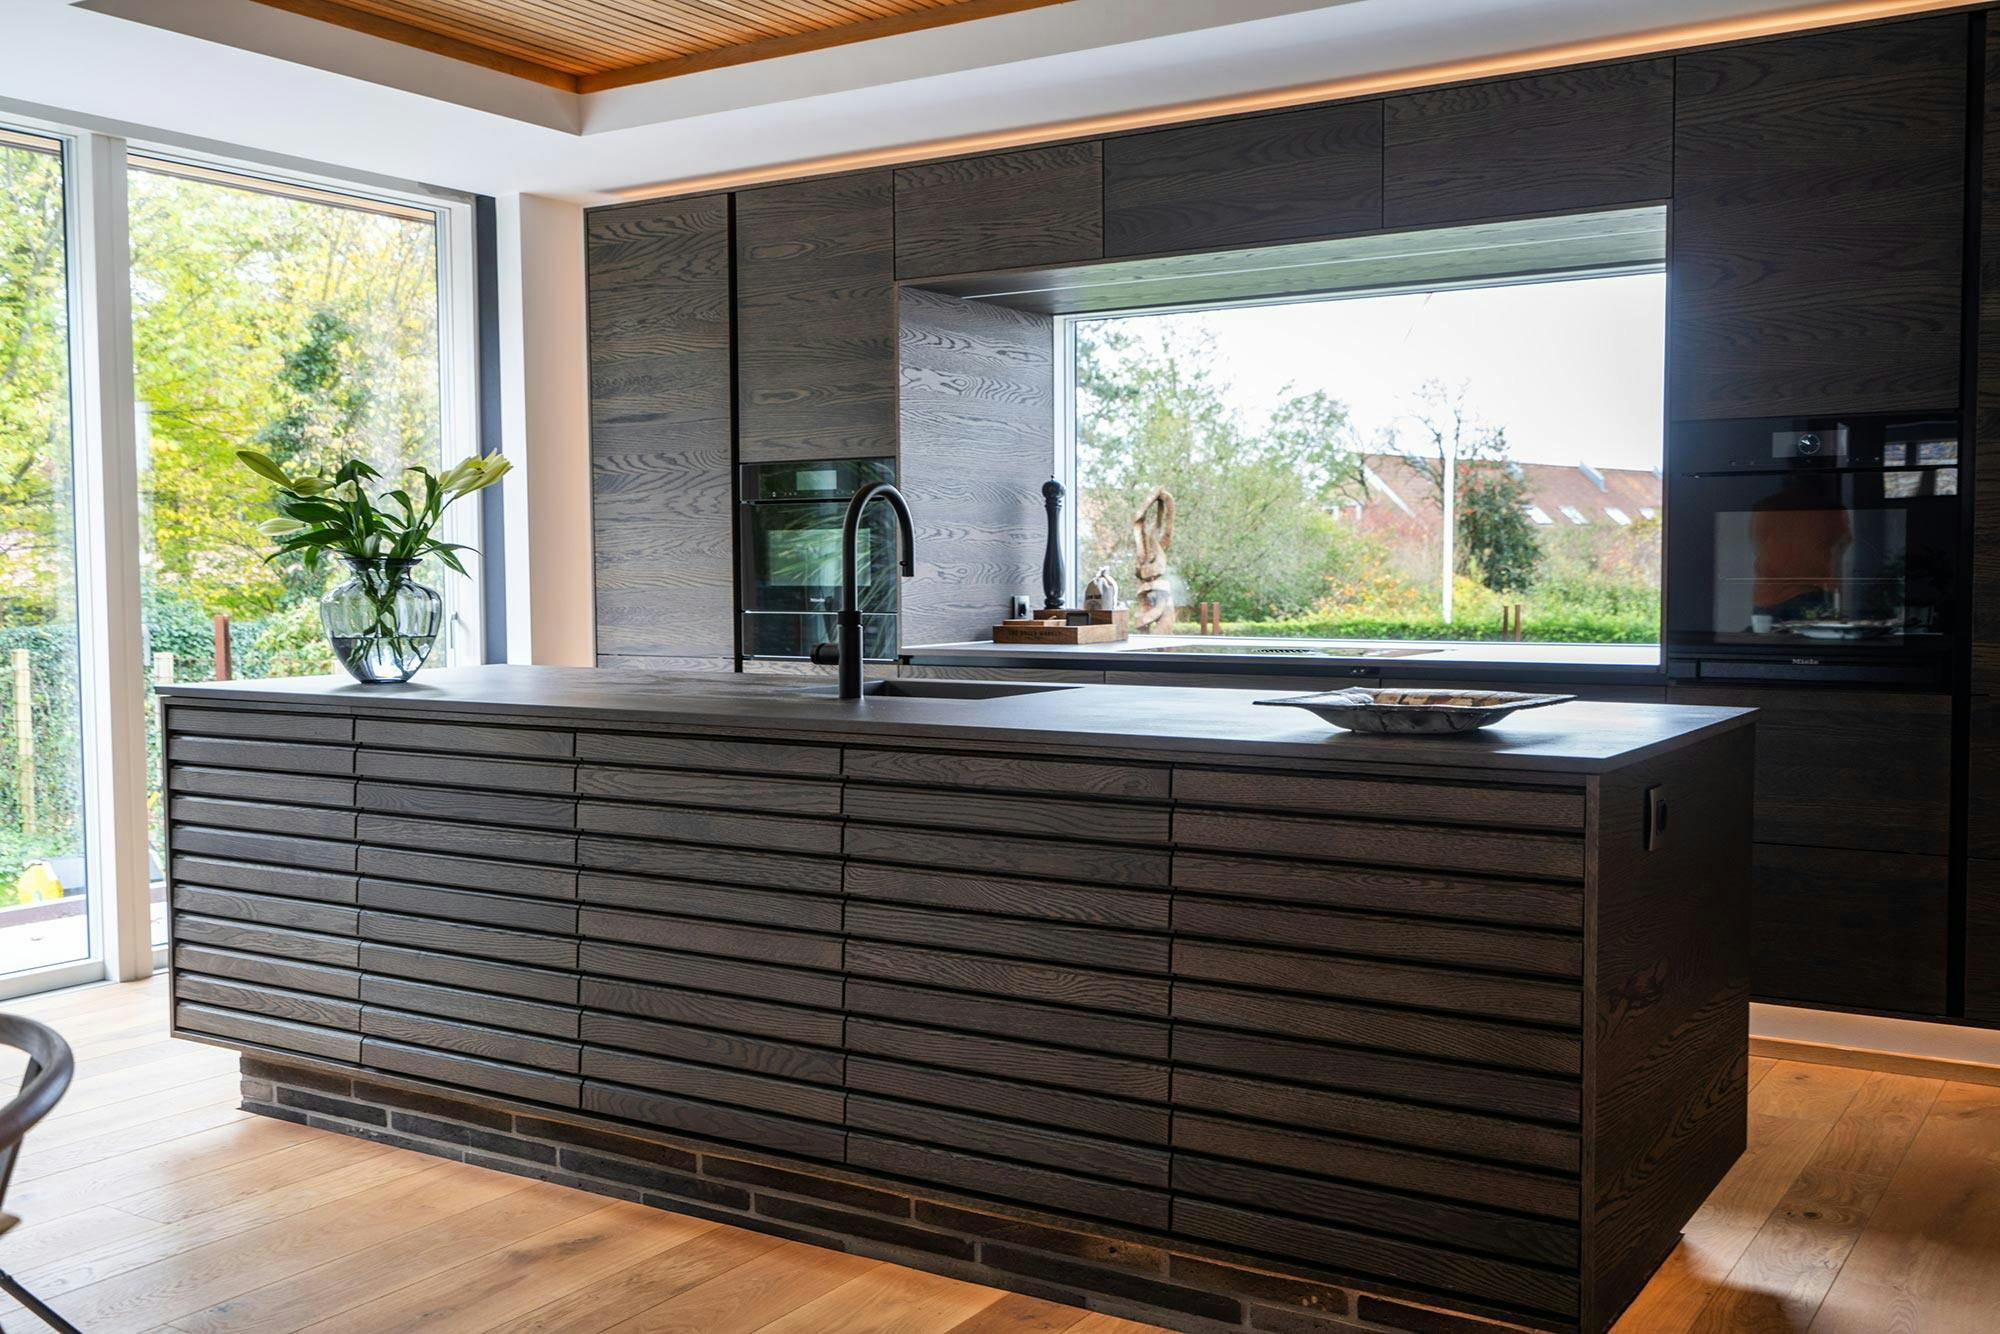 Image of Saxtoft Kitchen 1.jpg?auto=format%2Ccompress&ixlib=php 3.3 in Upea keittiö upeaan kotiin Uudessa-Seelannissa	 - Cosentino